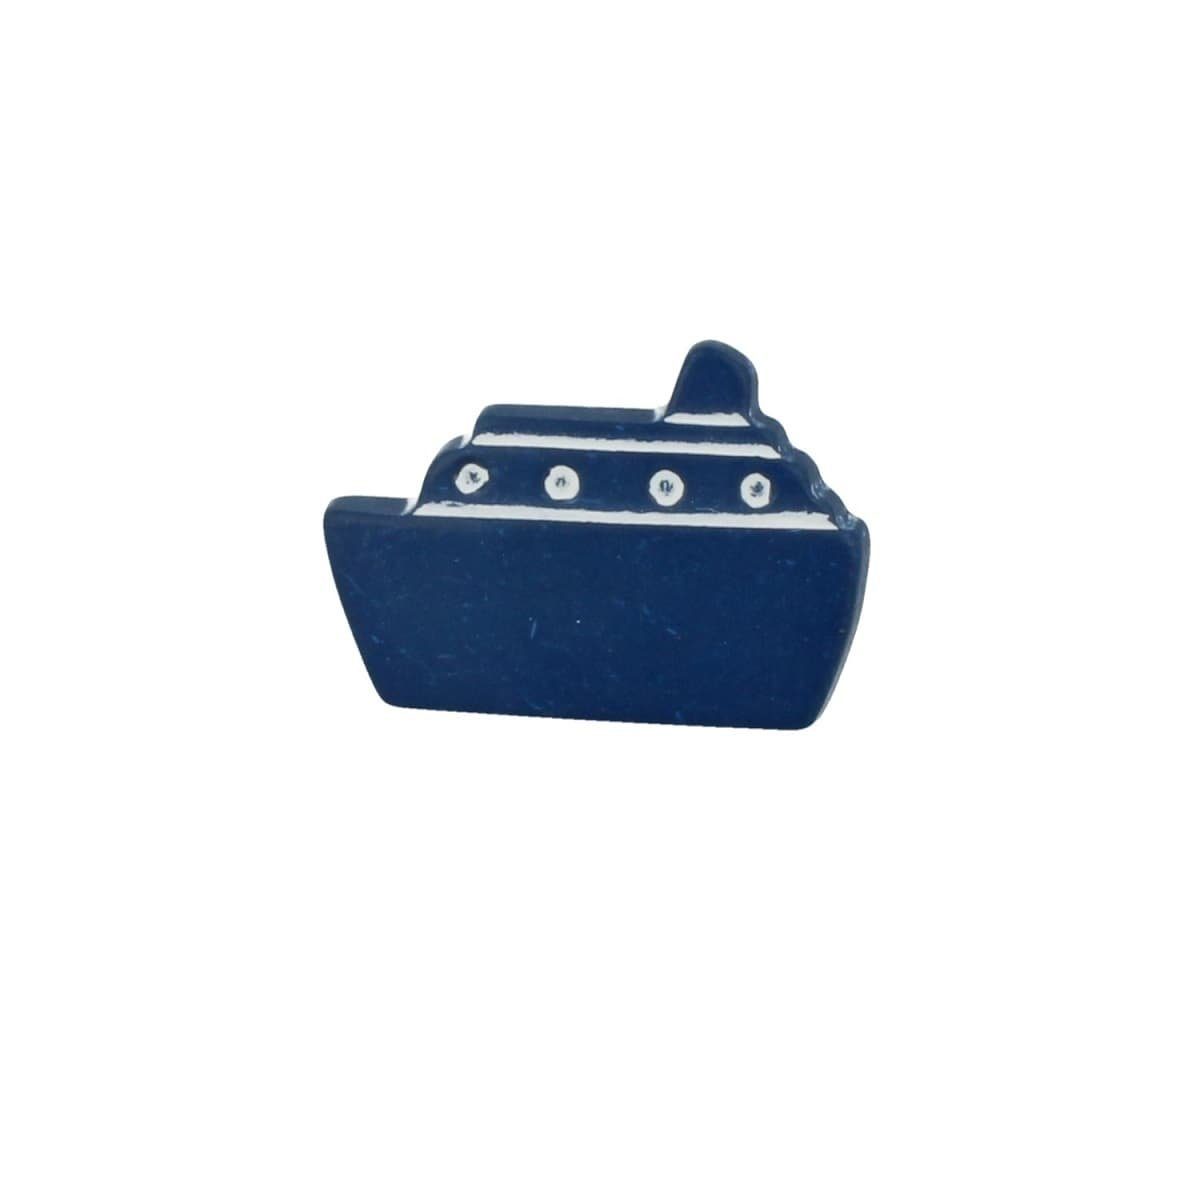 MS Beschläge Türbeschlag Möbelknopf Kinderzimmerknopf Modell Blaues Schiff